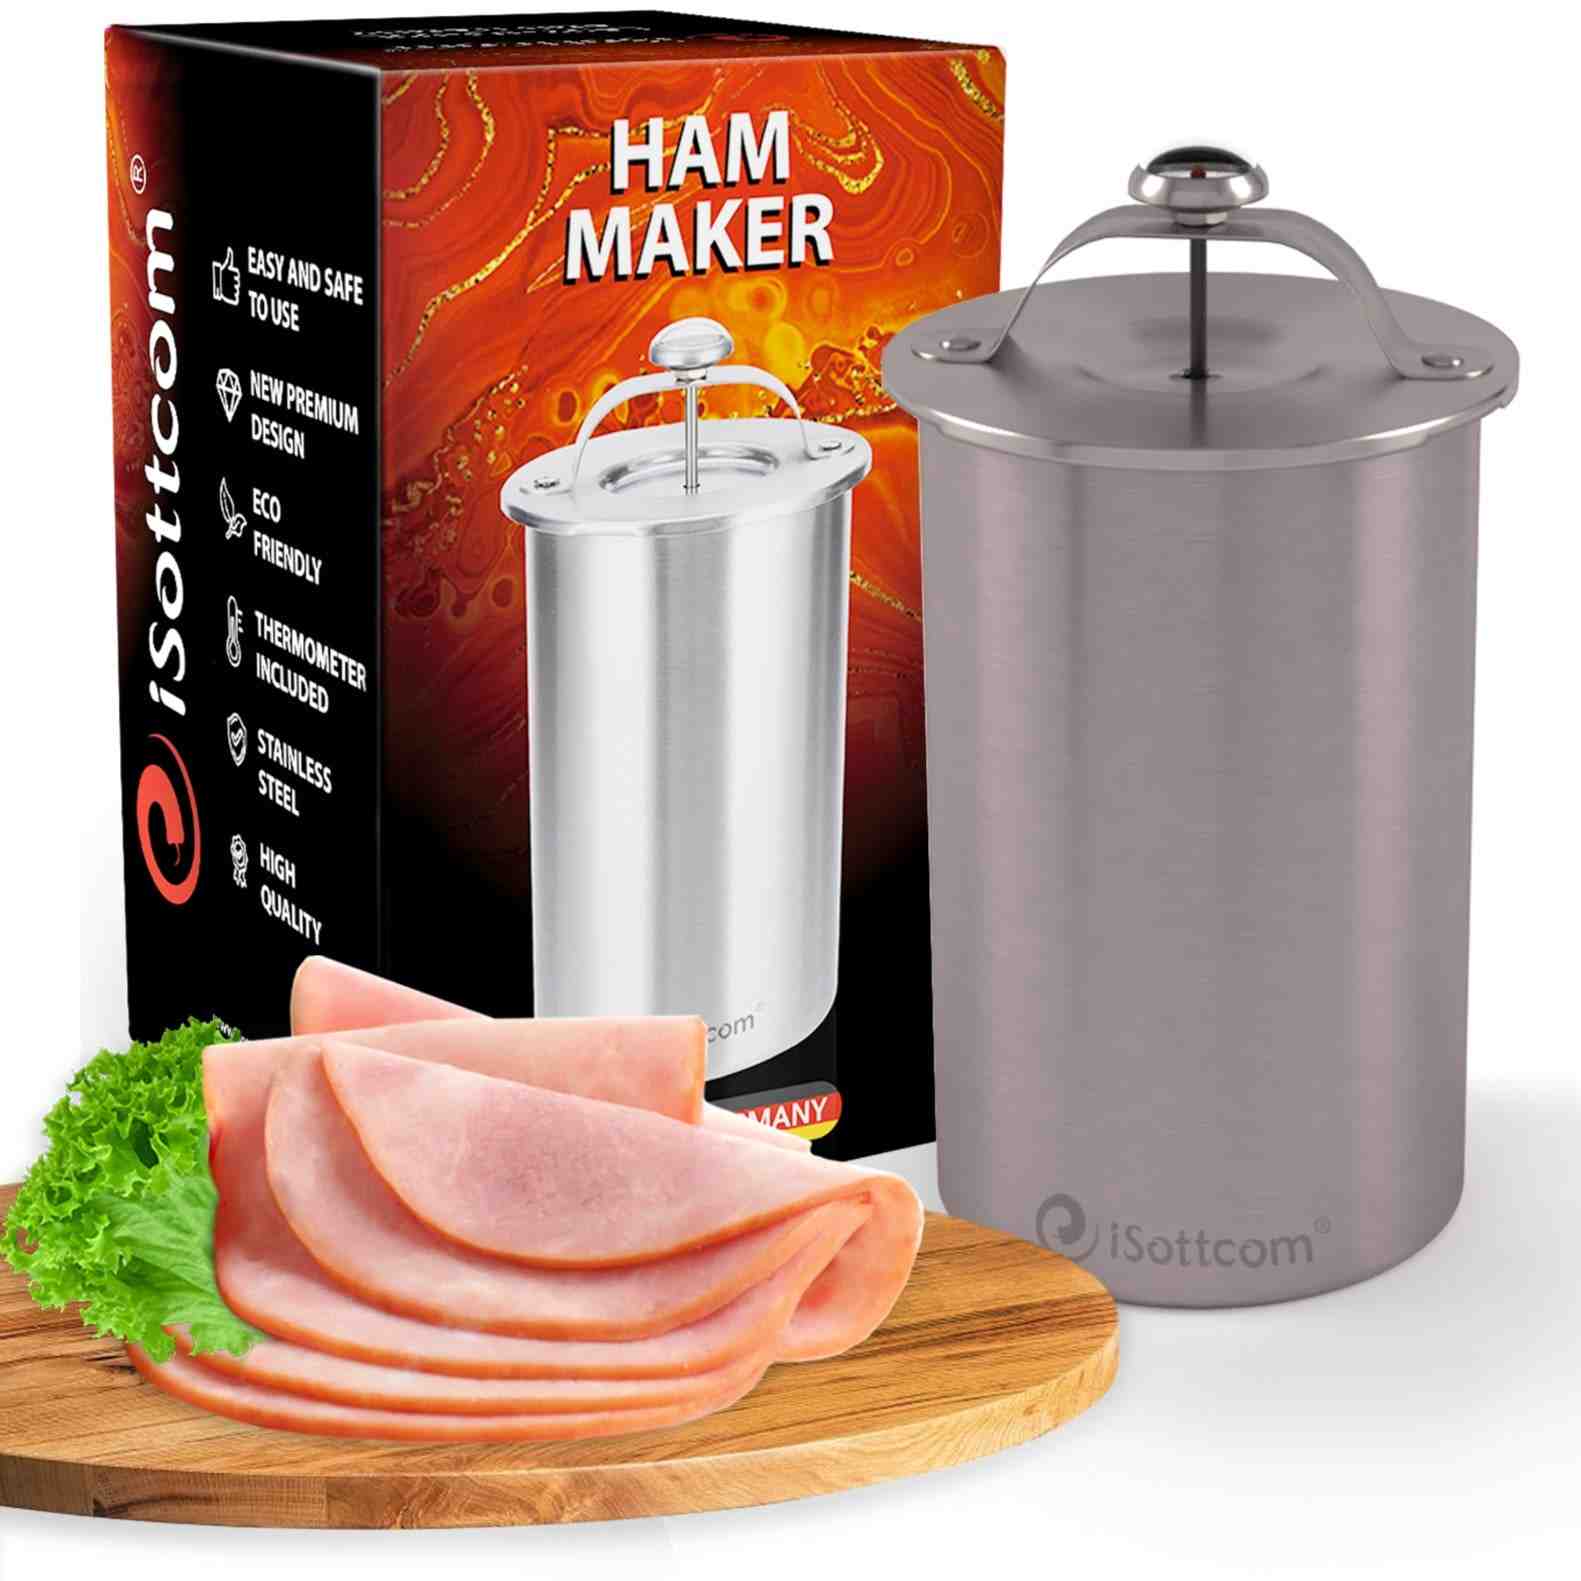 How do you make a ham form?